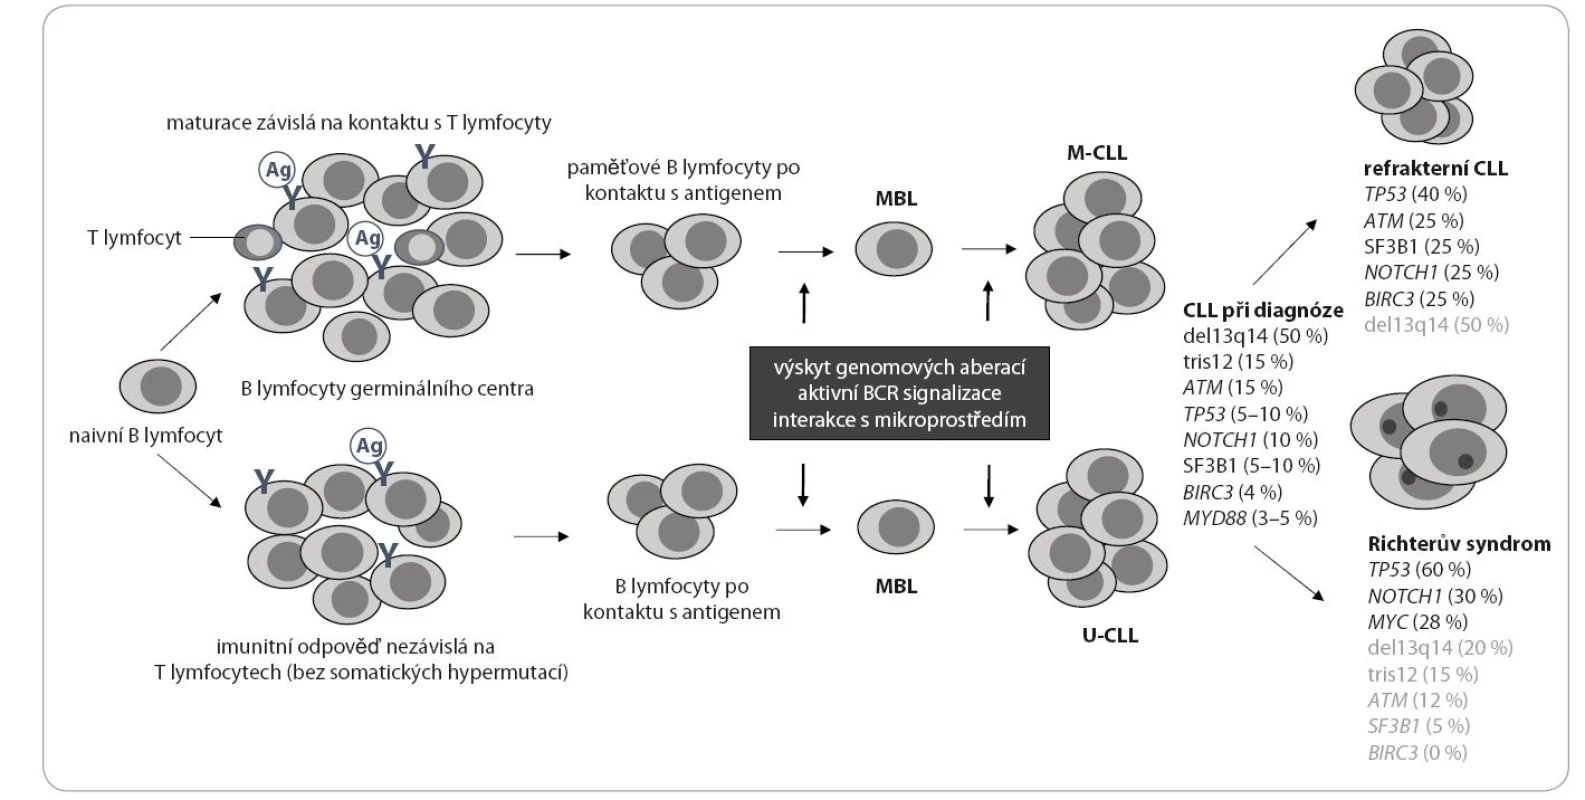 Klonální evoluce CLL a přítomnost molekulárních lézí v jednotlivých stadiích onemocnění. Hlavní mechanizmy patogeneze CLL jsou vypsány v šedém rámečku (podle Gaidano et al, 2012) [117].